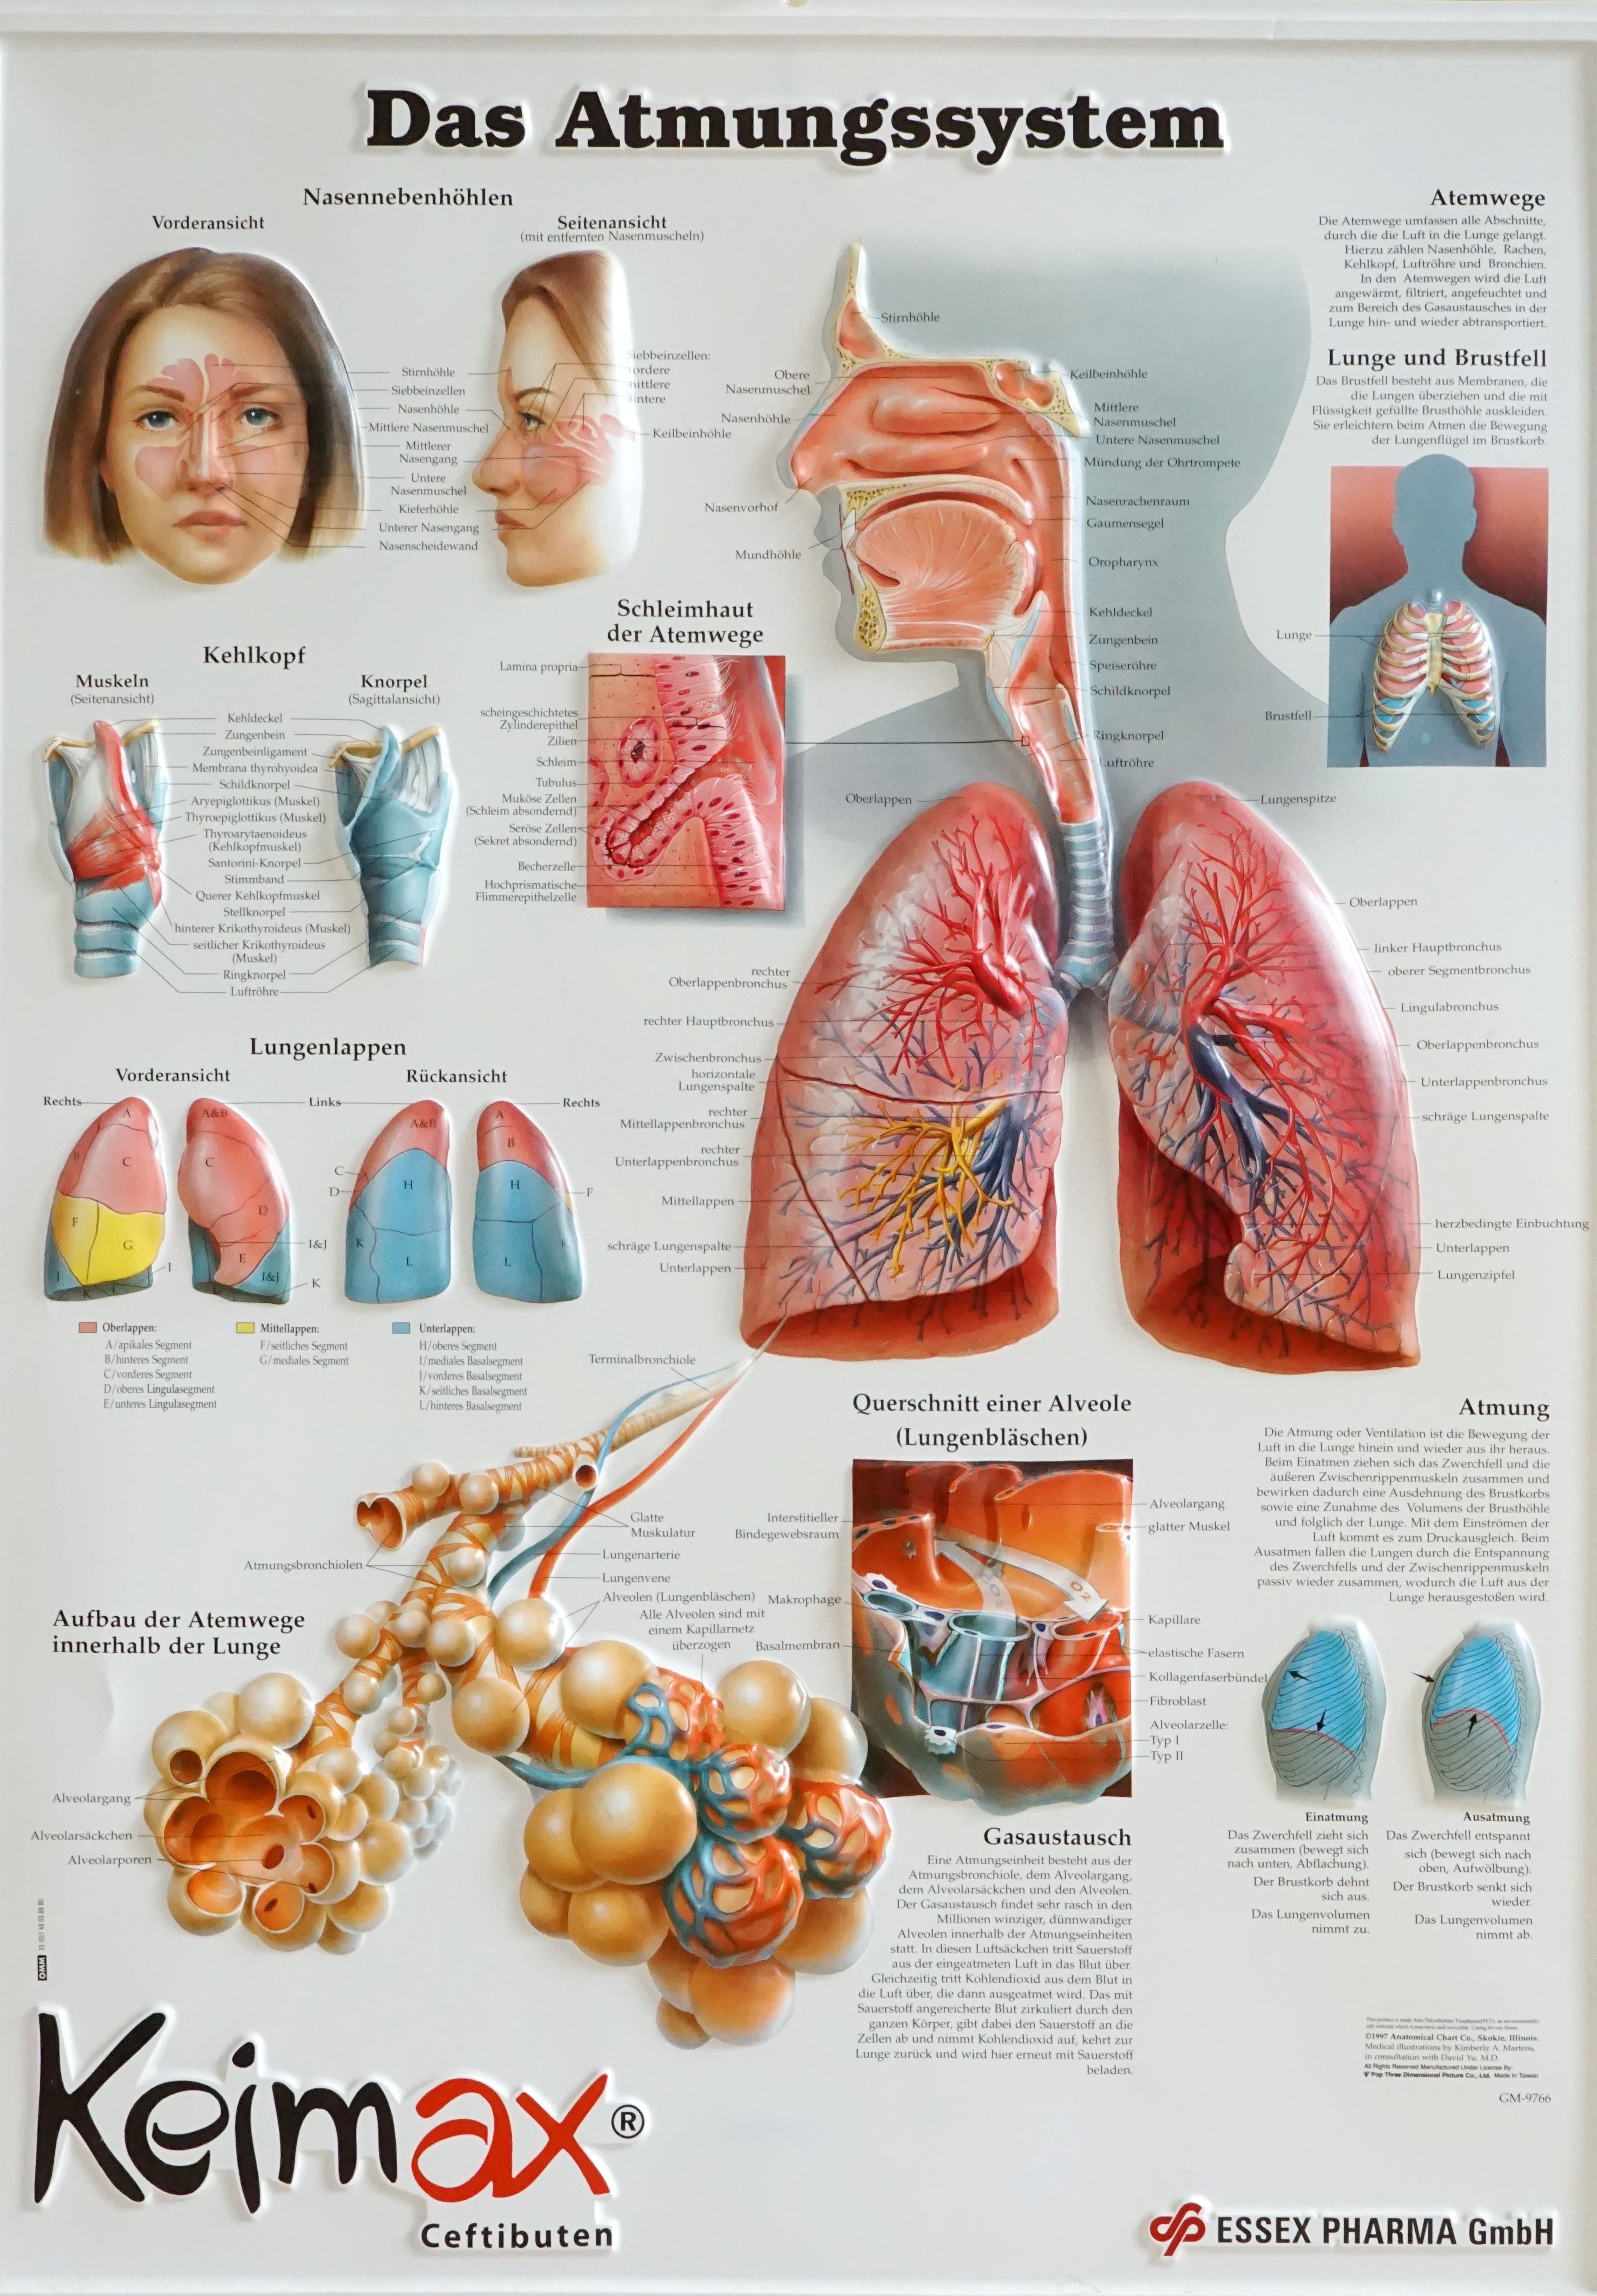 Lehrtafel: Das Atmungssystem (Krankenhausmuseum Bielefeld e.V. CC BY-NC-SA)